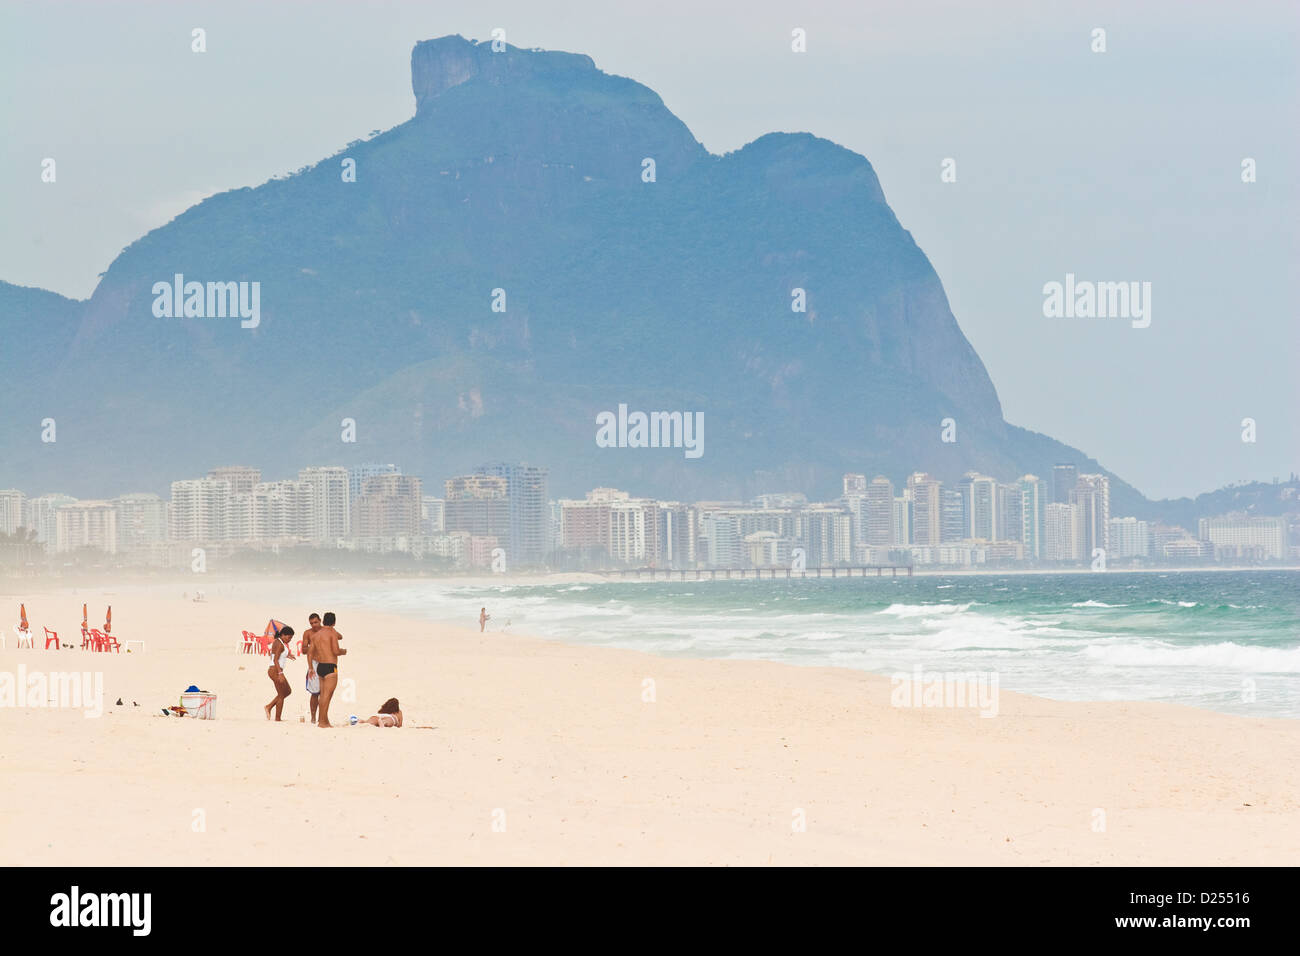 Local people on Pontal surf beach, Recreio dos Bandeirantes, Barra da Tijuca, Rio de Janeiro, Brazil Stock Photo